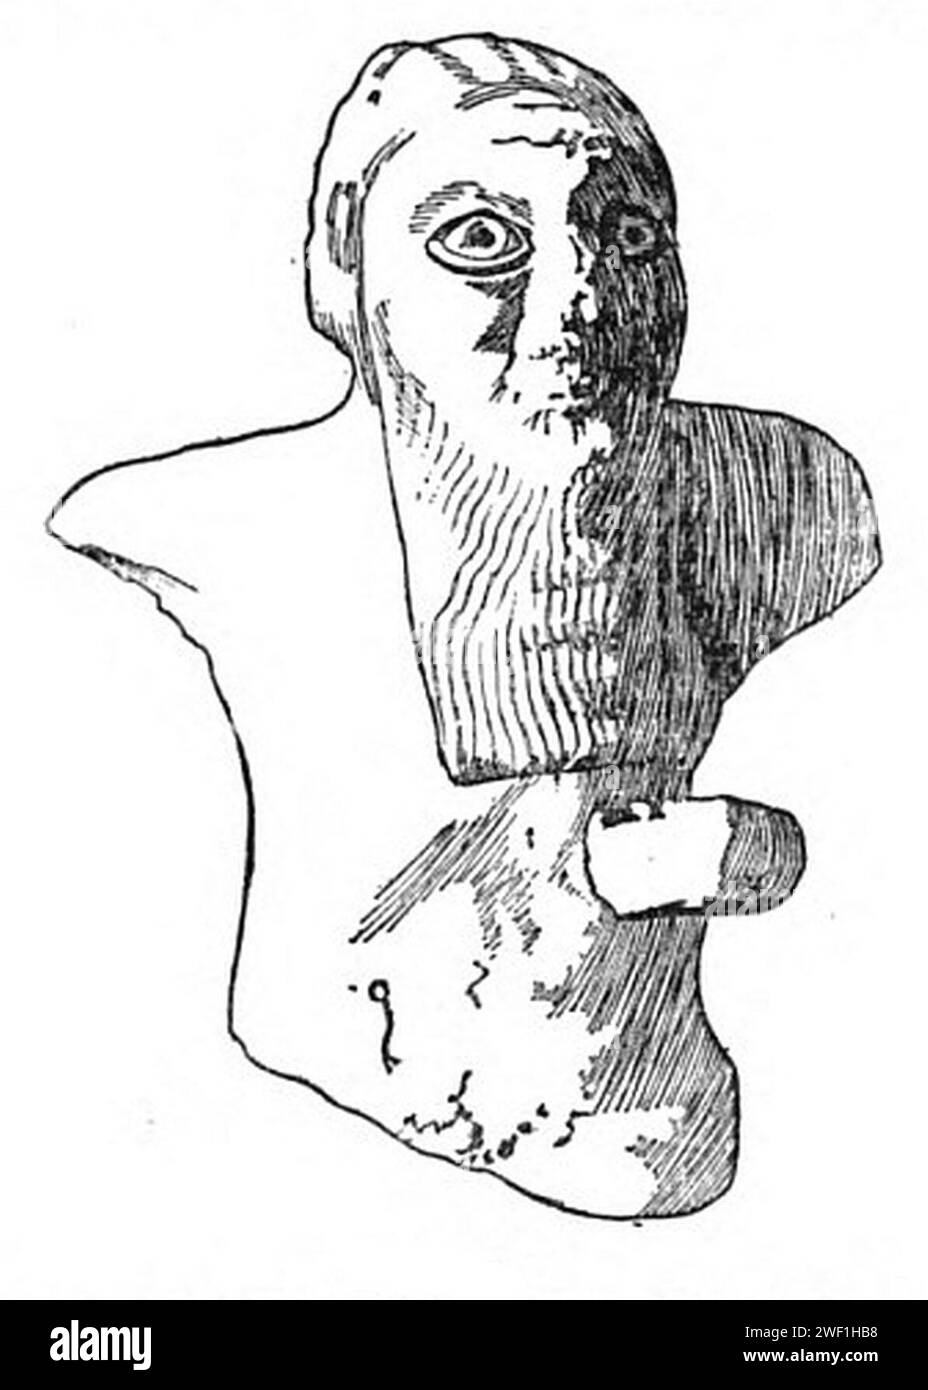 Archaische mesopotamische Statue eines Oranten aus der Zeit um 2700 v. Chr., die von Eschpum, Gouverneur de Susa und Vasall des Königs von Akkad, Manishtusu (2275-2260 v. Chr.), der elamischen Göttin Narundi geweiht wurde. Gefunden in Susa. Stockfoto